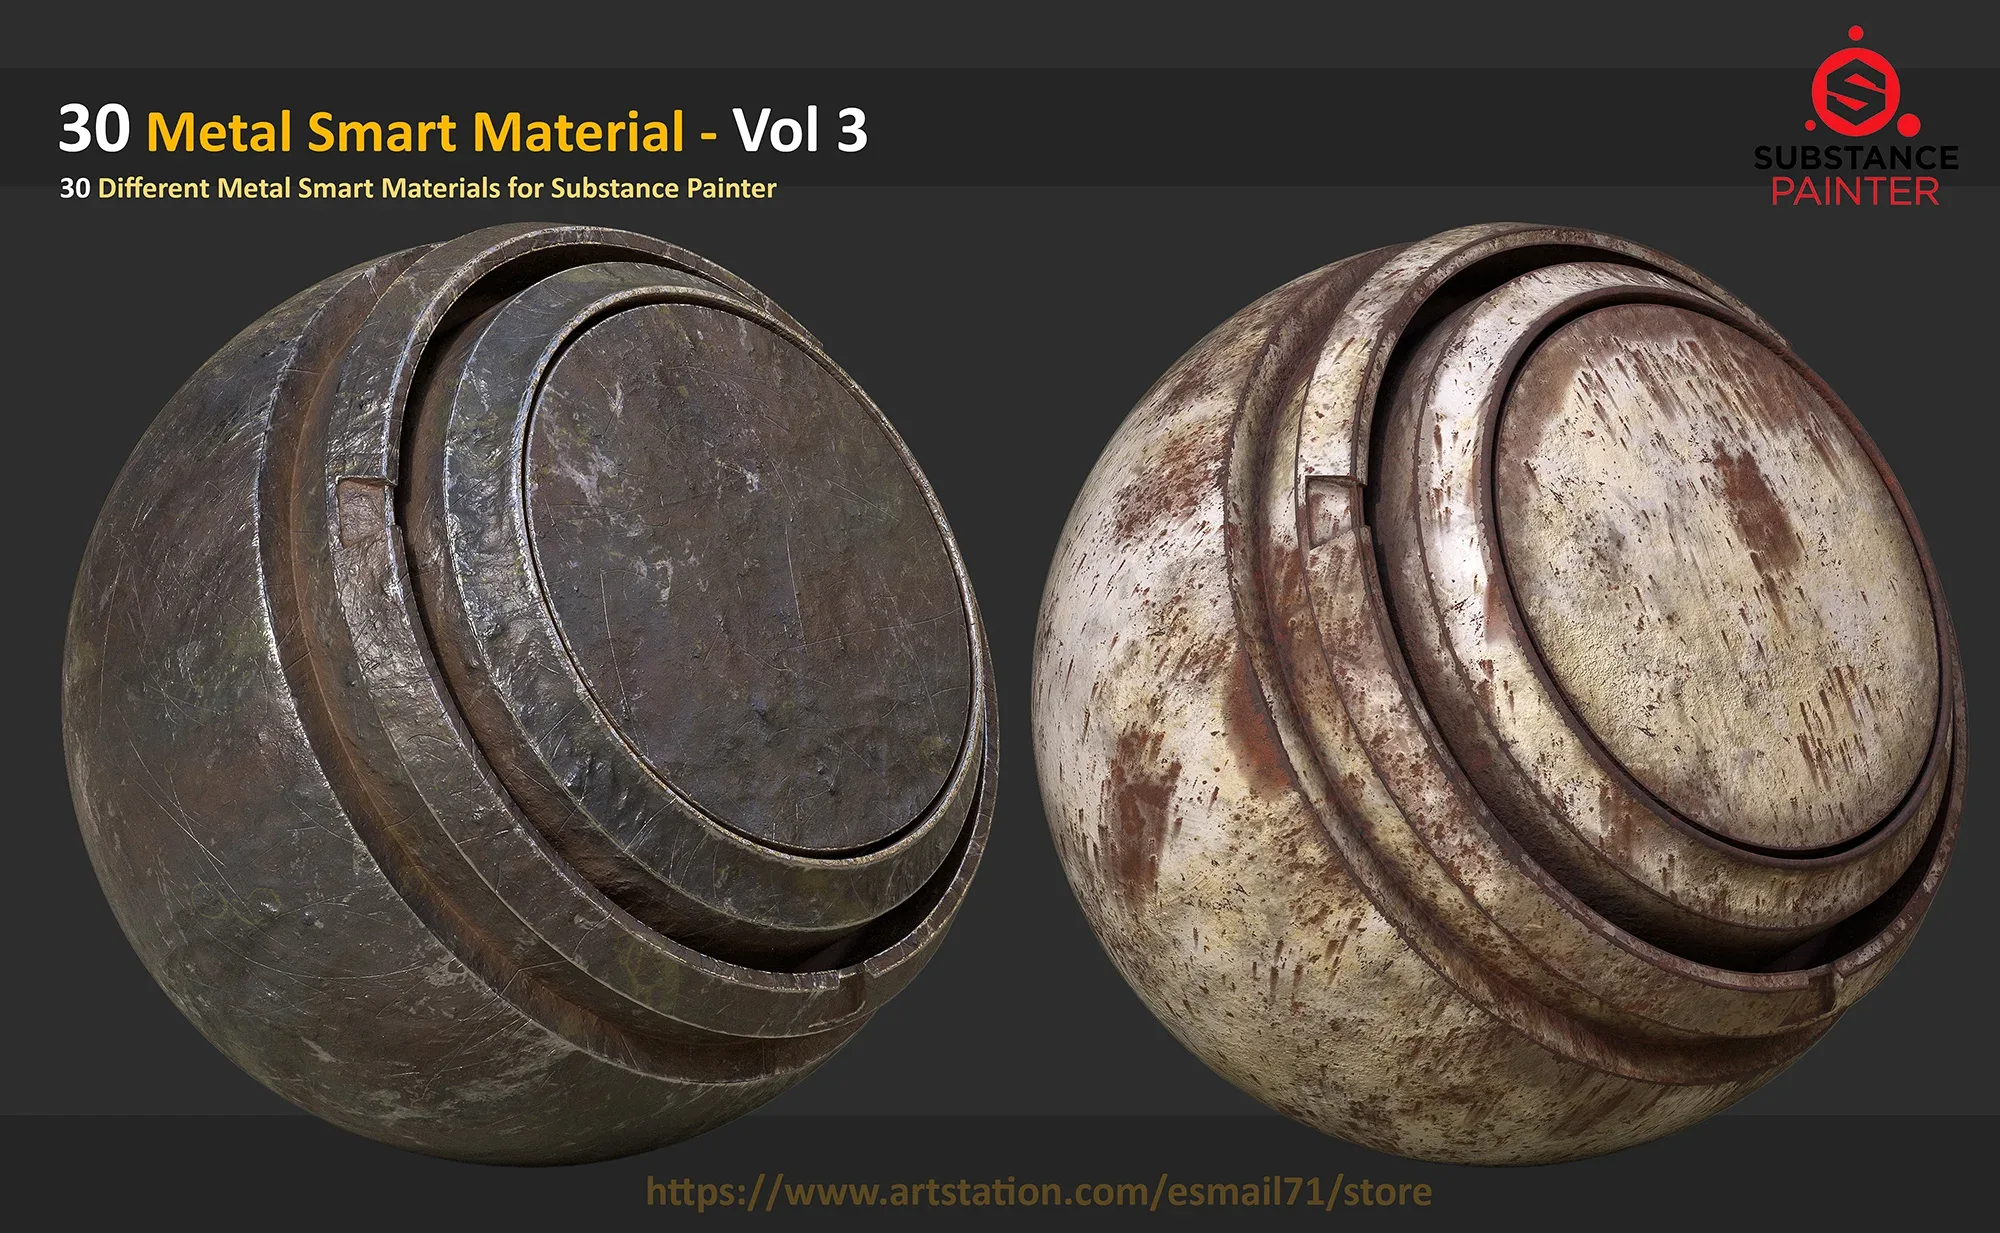 30 Metal Smart Material - Vol 3